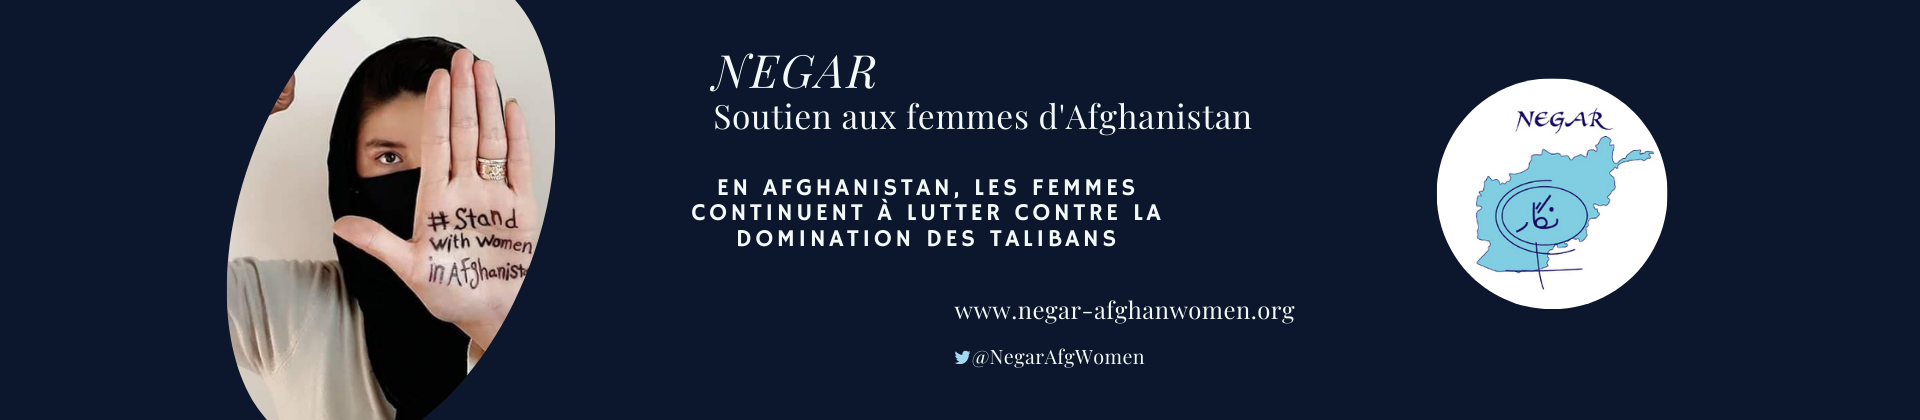 Catégorie : FEMMES en MARCHE pour l’AFGHANISTAN, conférences de Doushanbé et Kaboul